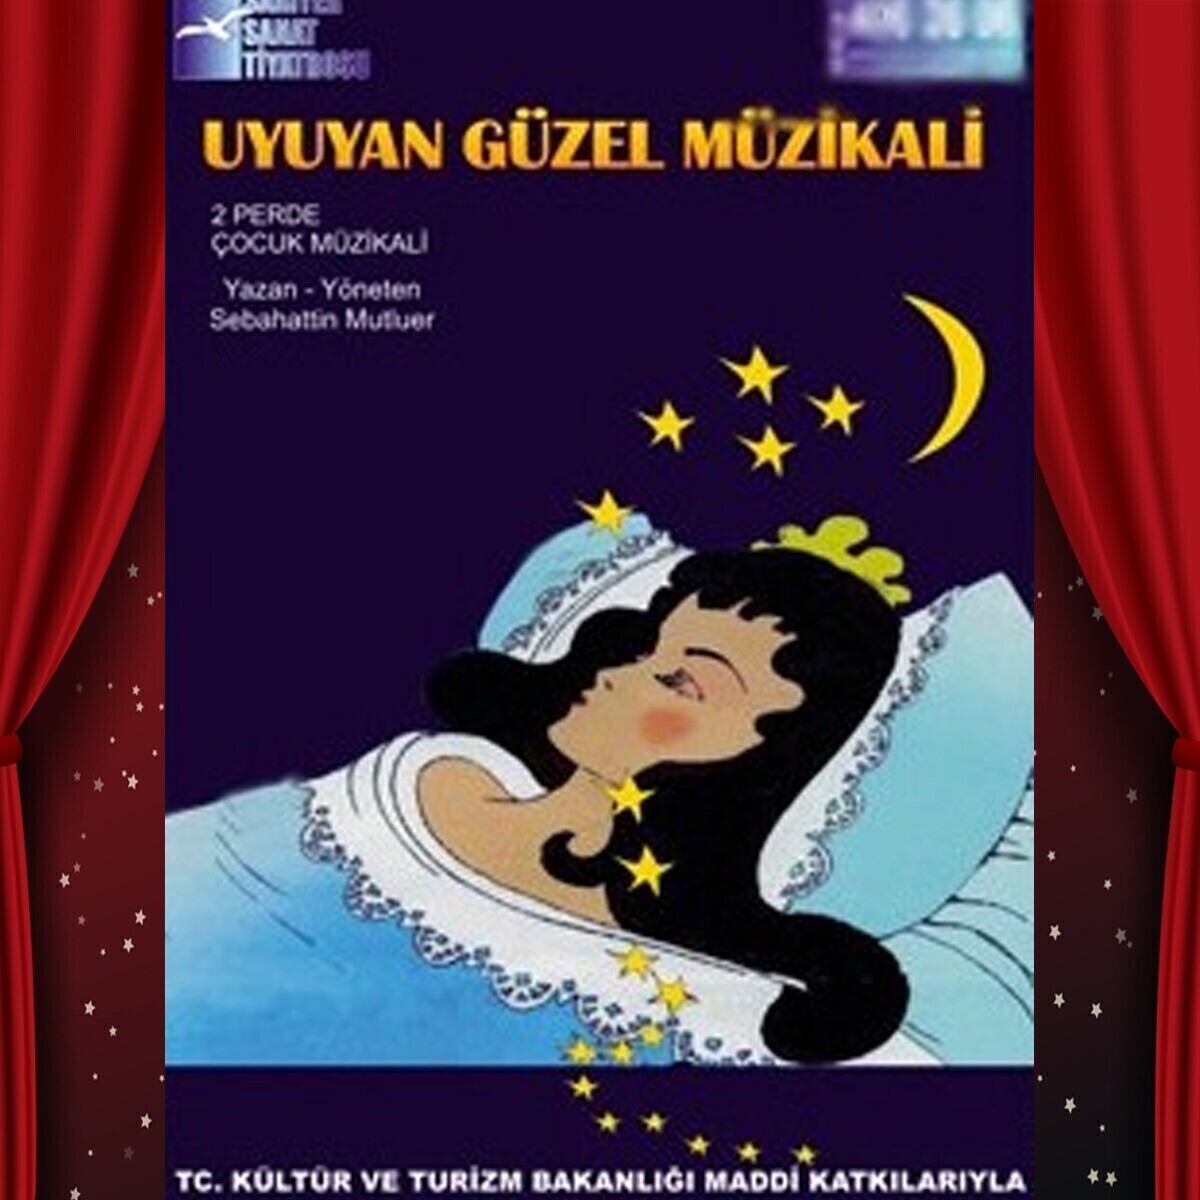 Uyuyan Güzel Adlı Çocuk Tiyatro Oyuna Bilet